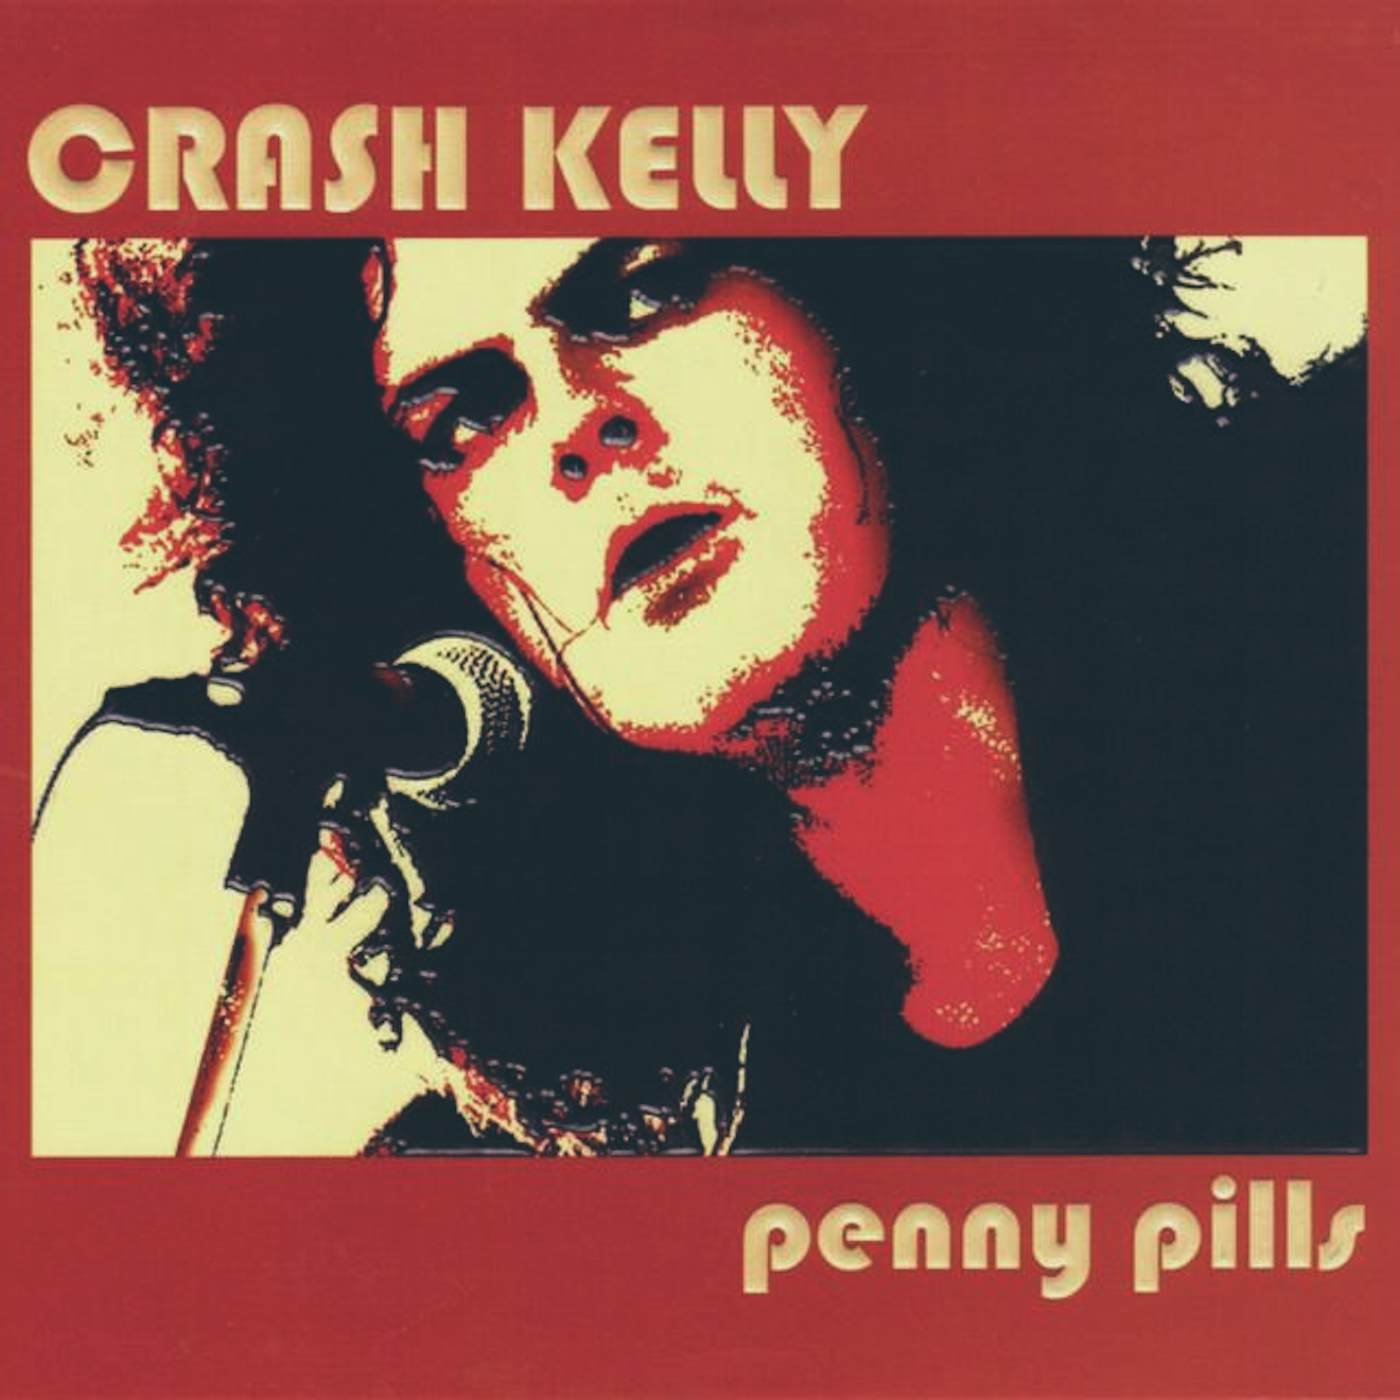 Crash Kelly